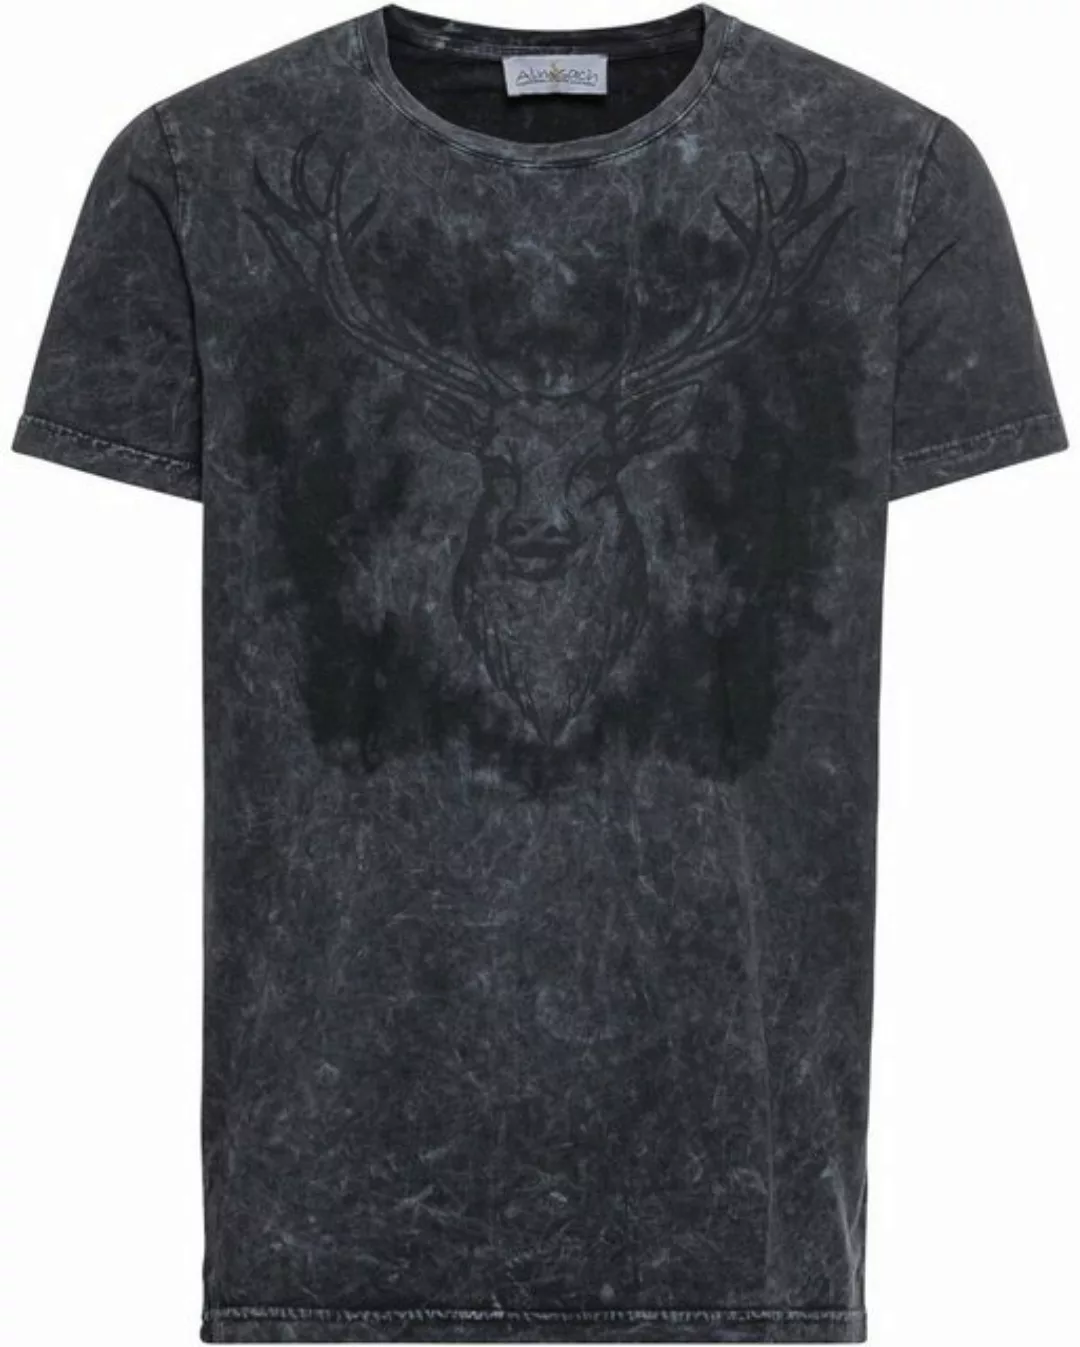 Almsach T-Shirt T-Shirt mit Hirschmotiv günstig online kaufen